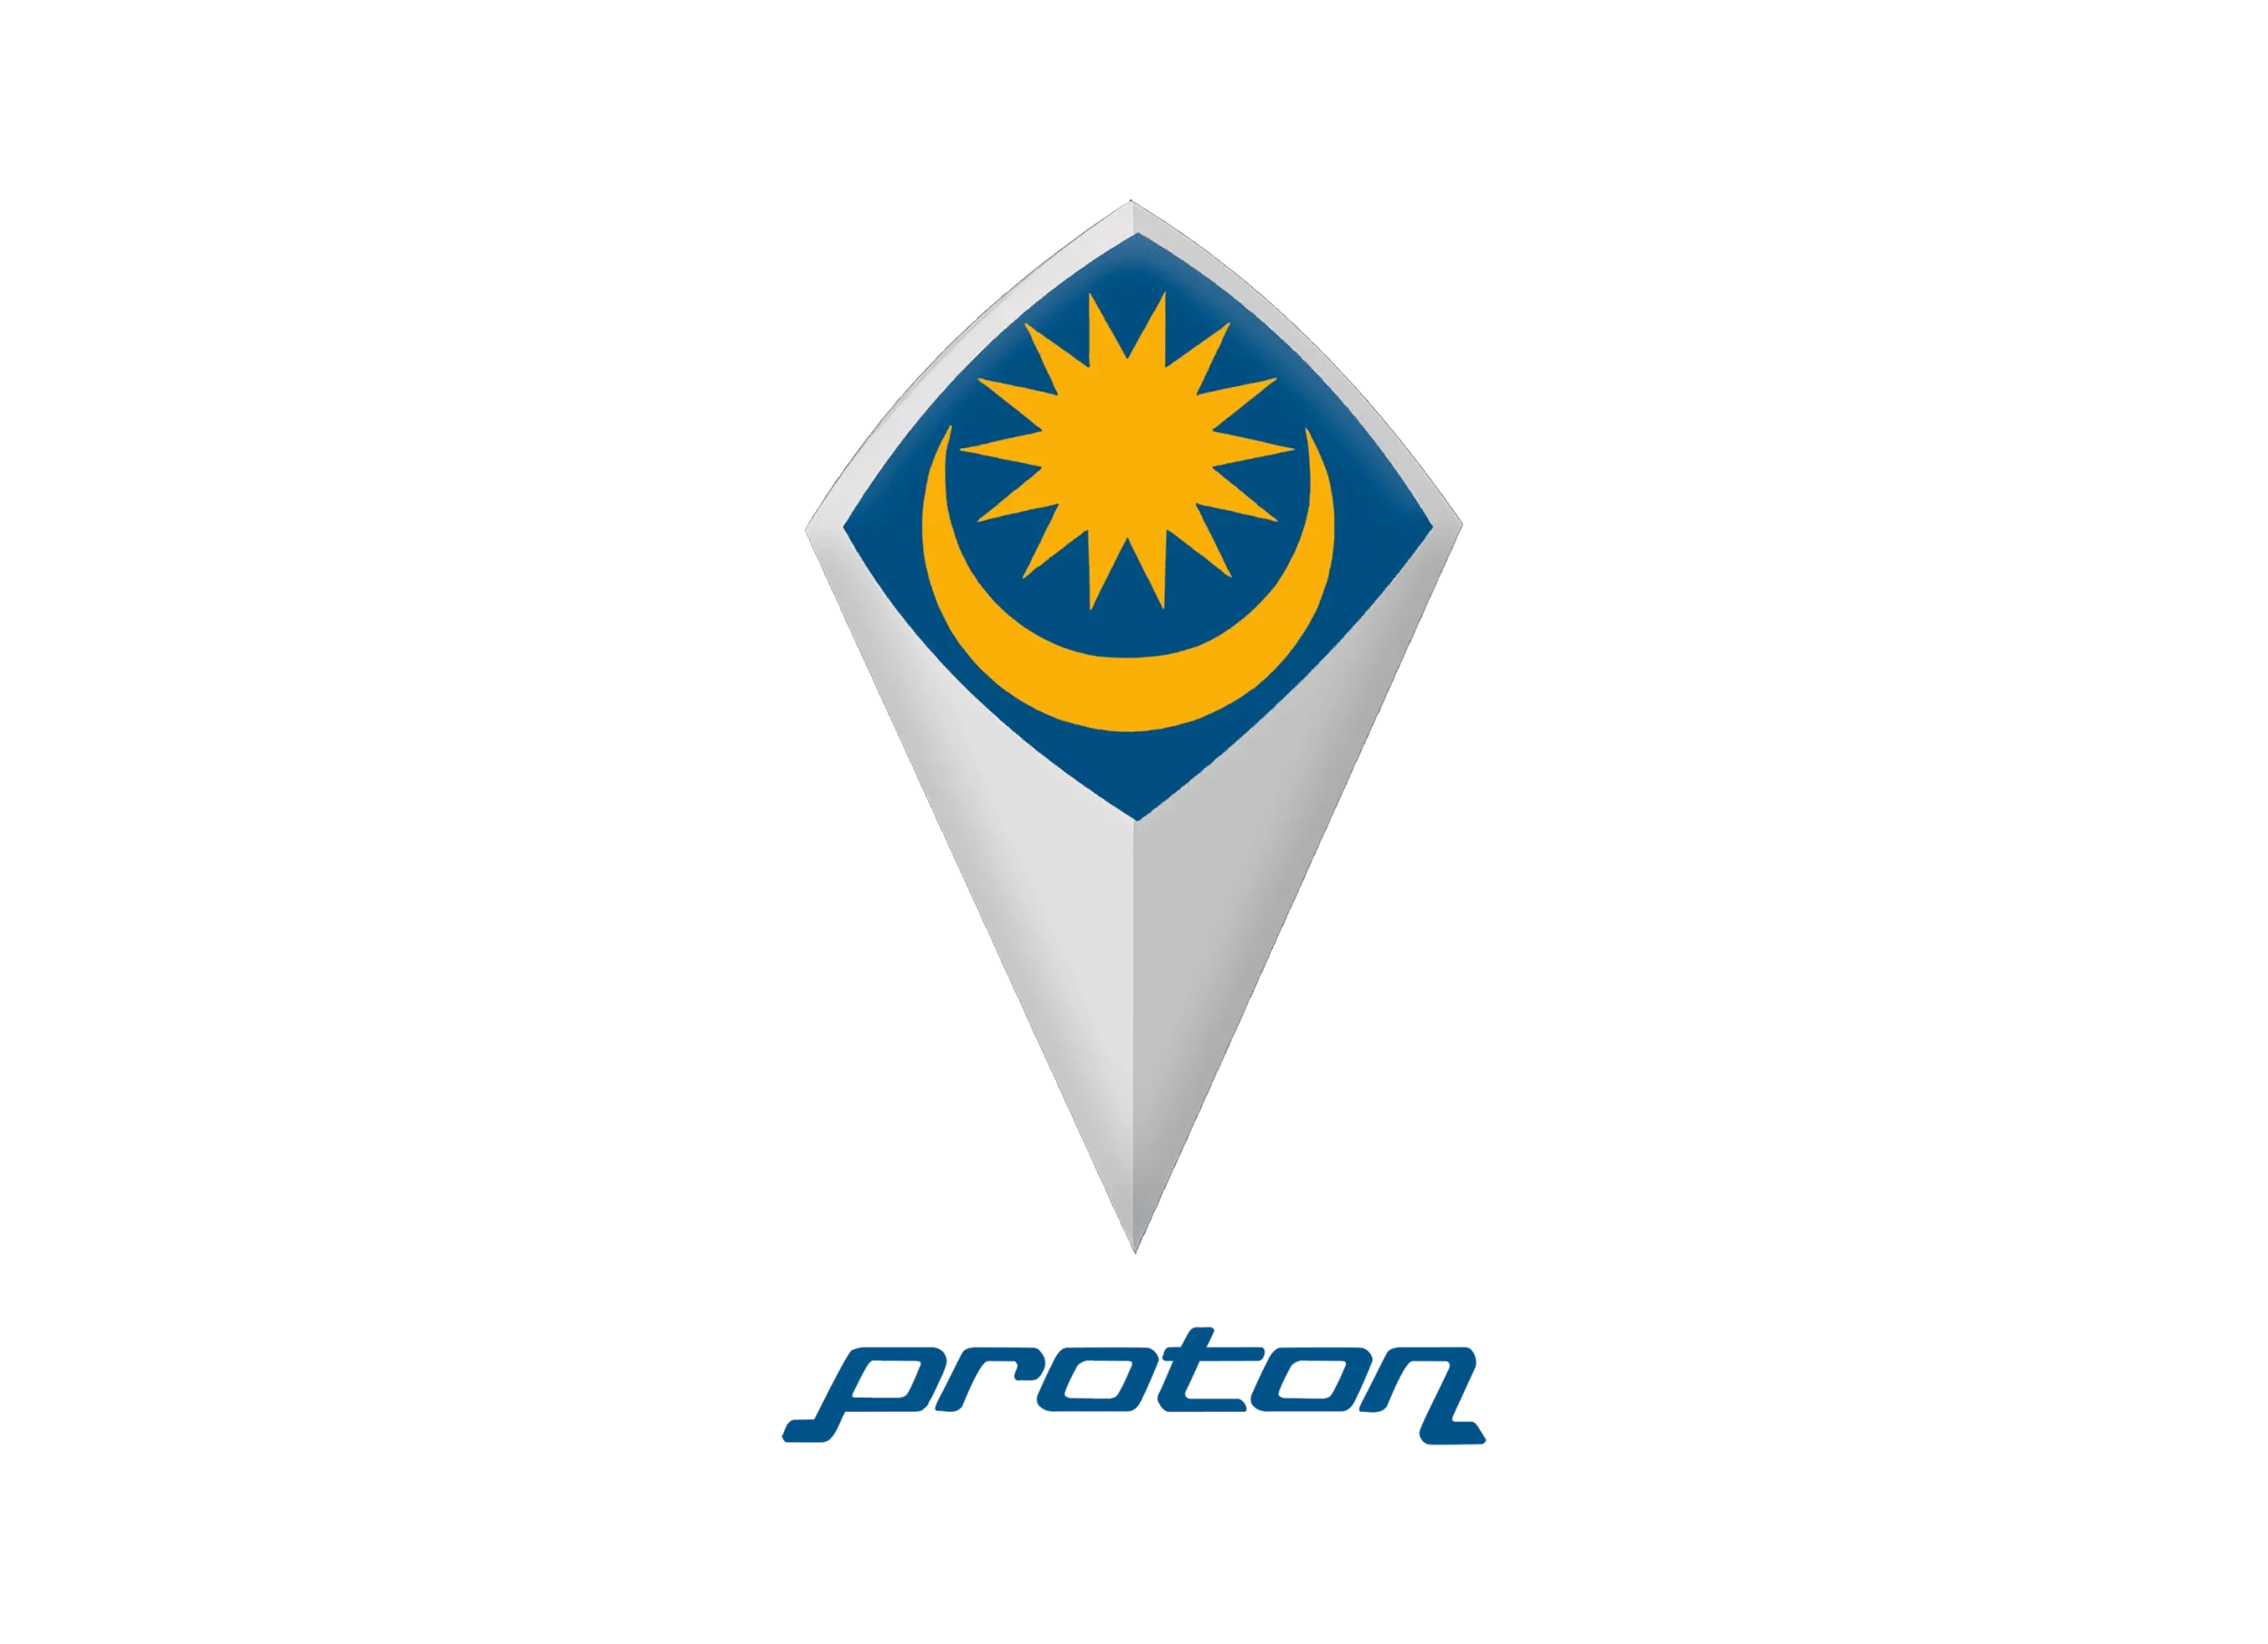 Proton logo 1983-1992